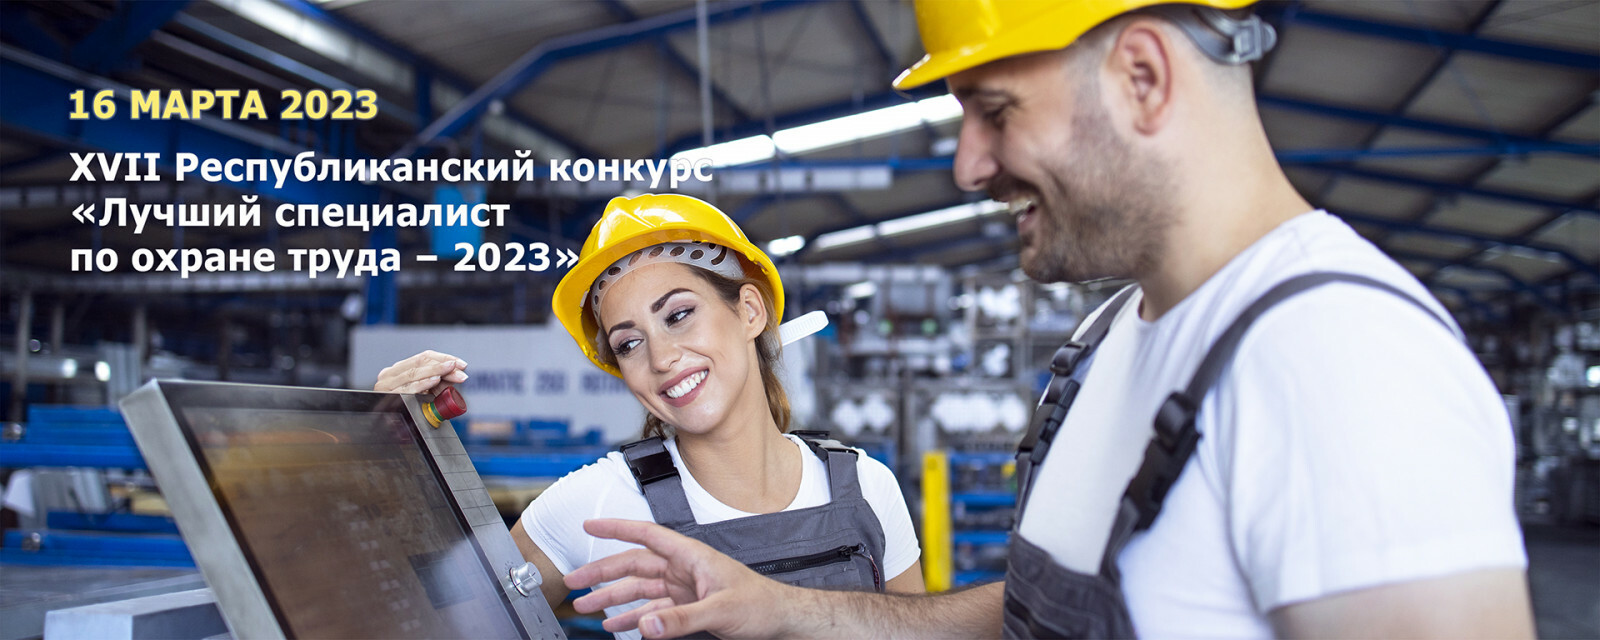 Предприятия и организации Башкортостана приглашаются к участию в Республиканском конкурсе «Лучший специалист по охране труда – 2023»